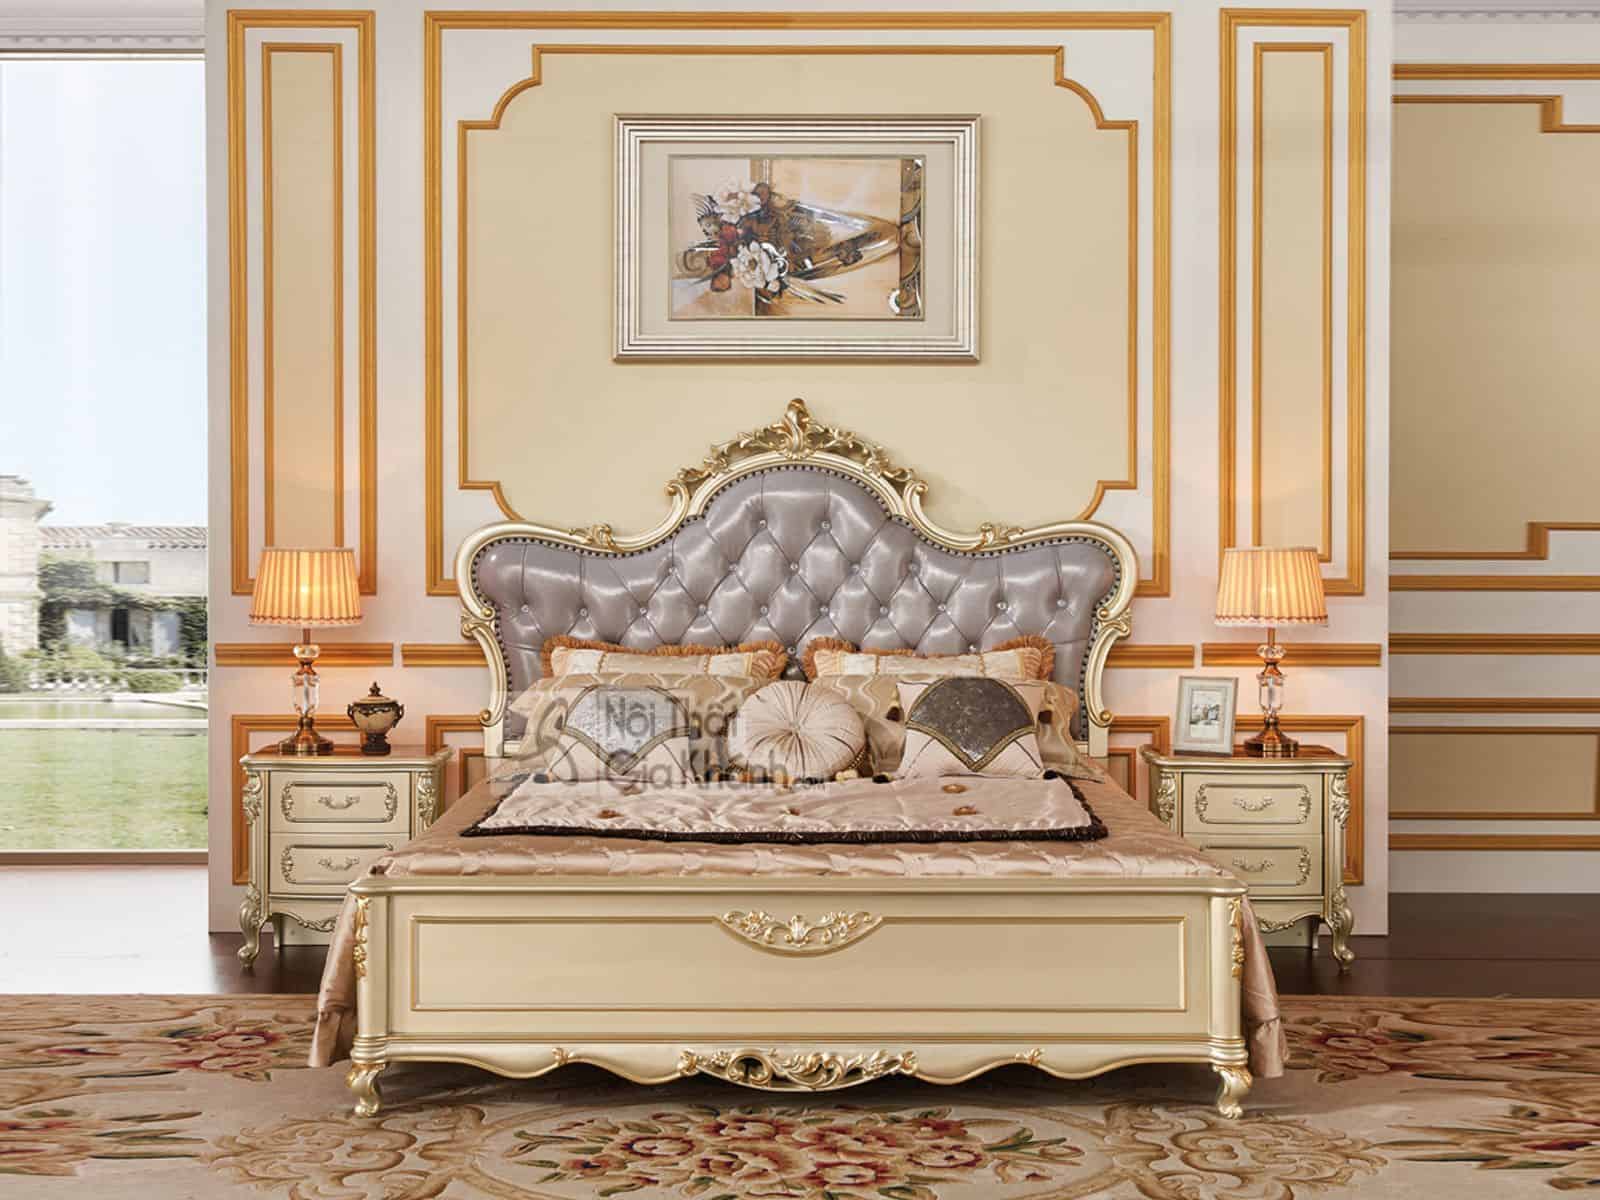 Giường ngủ gỗ đẹp nhập khẩu cao cấp GI8835A (Mẫu mới nhất)